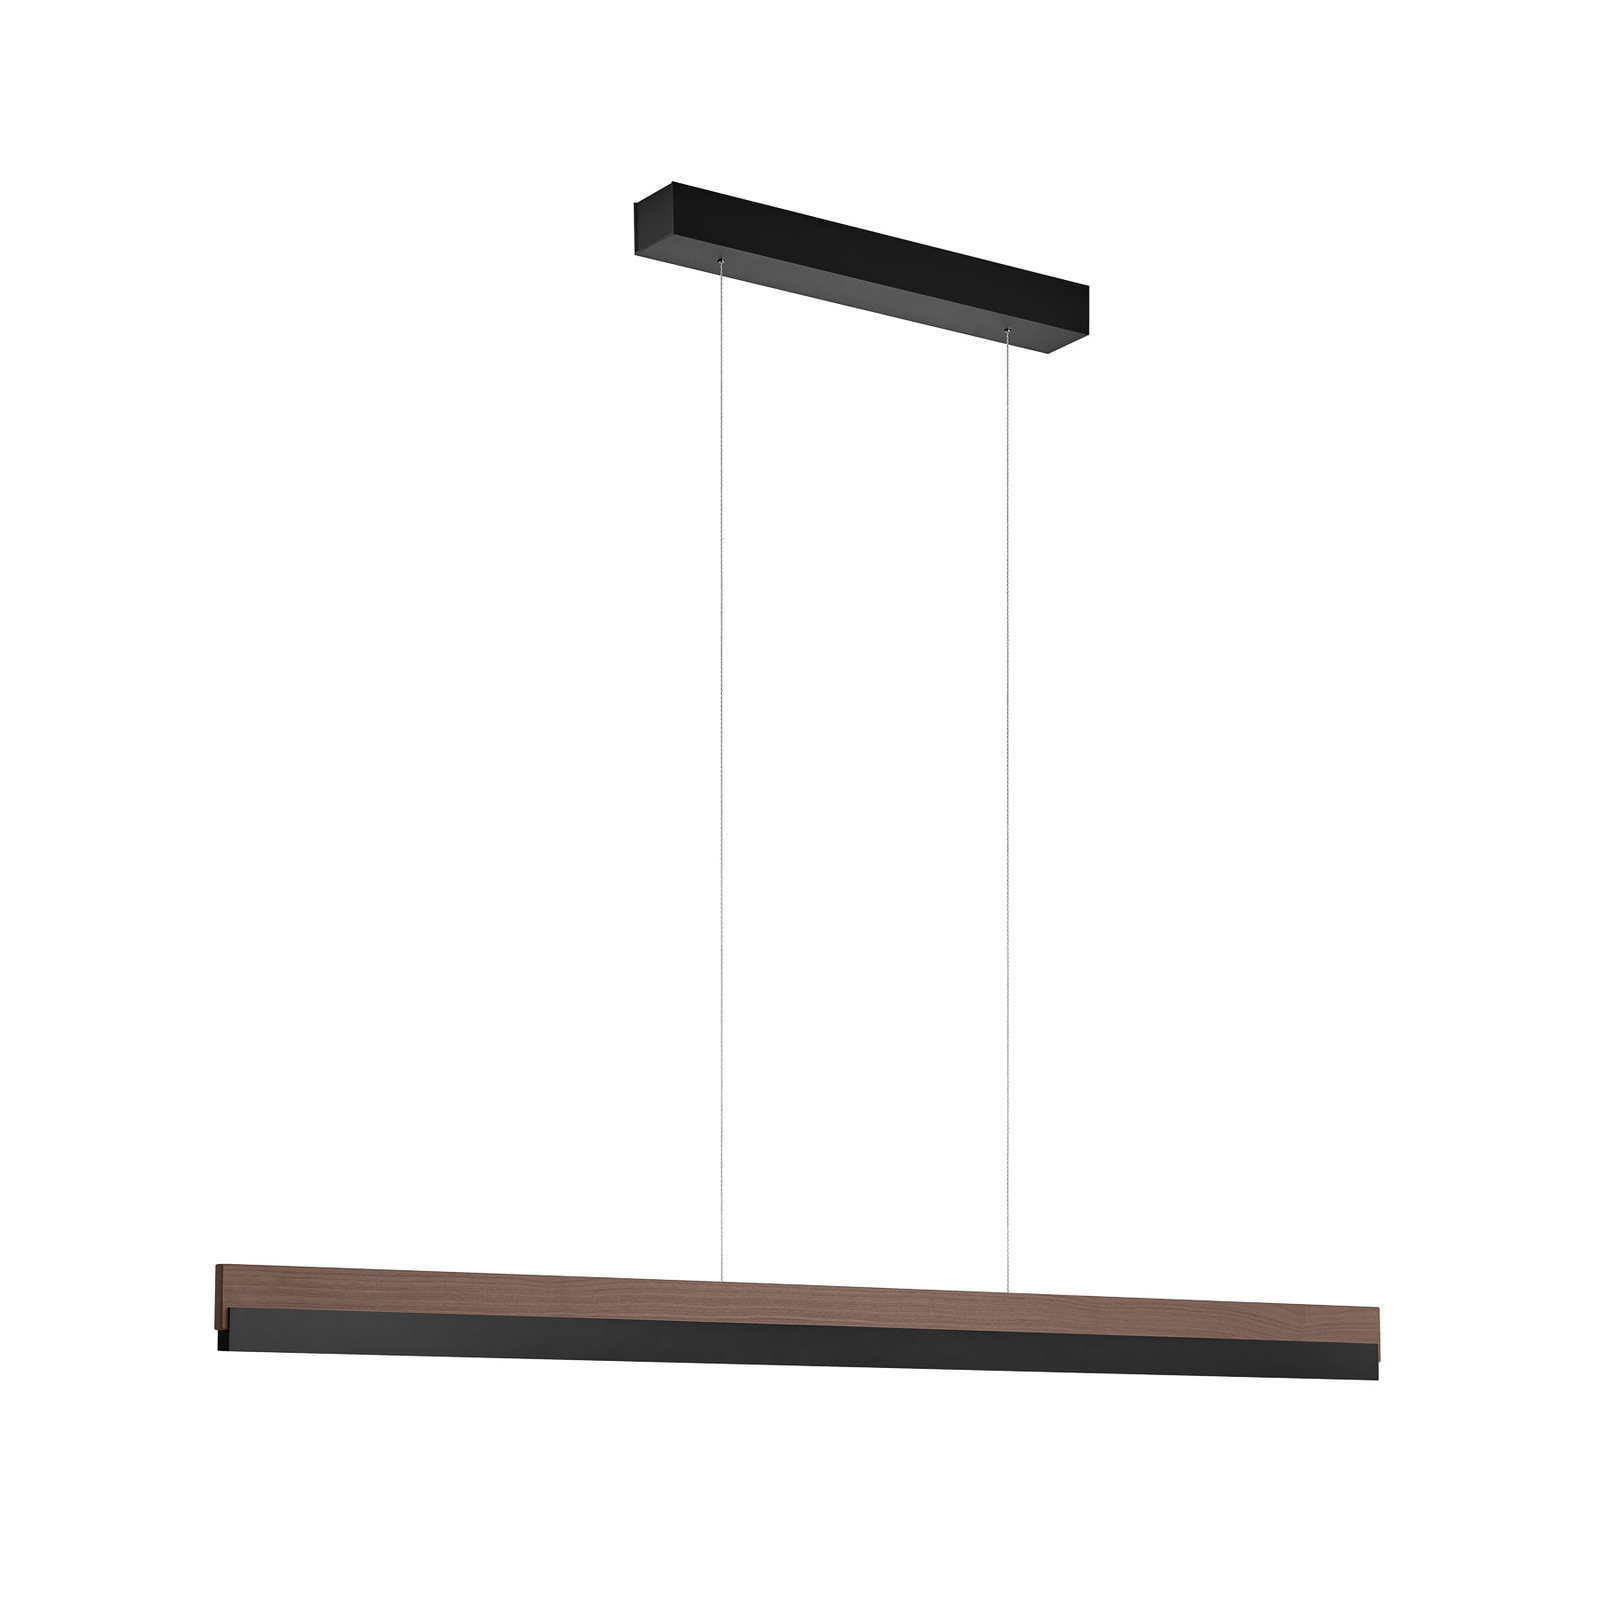 Quitani hanglamp Keijo, zwart/noot, 123 cm